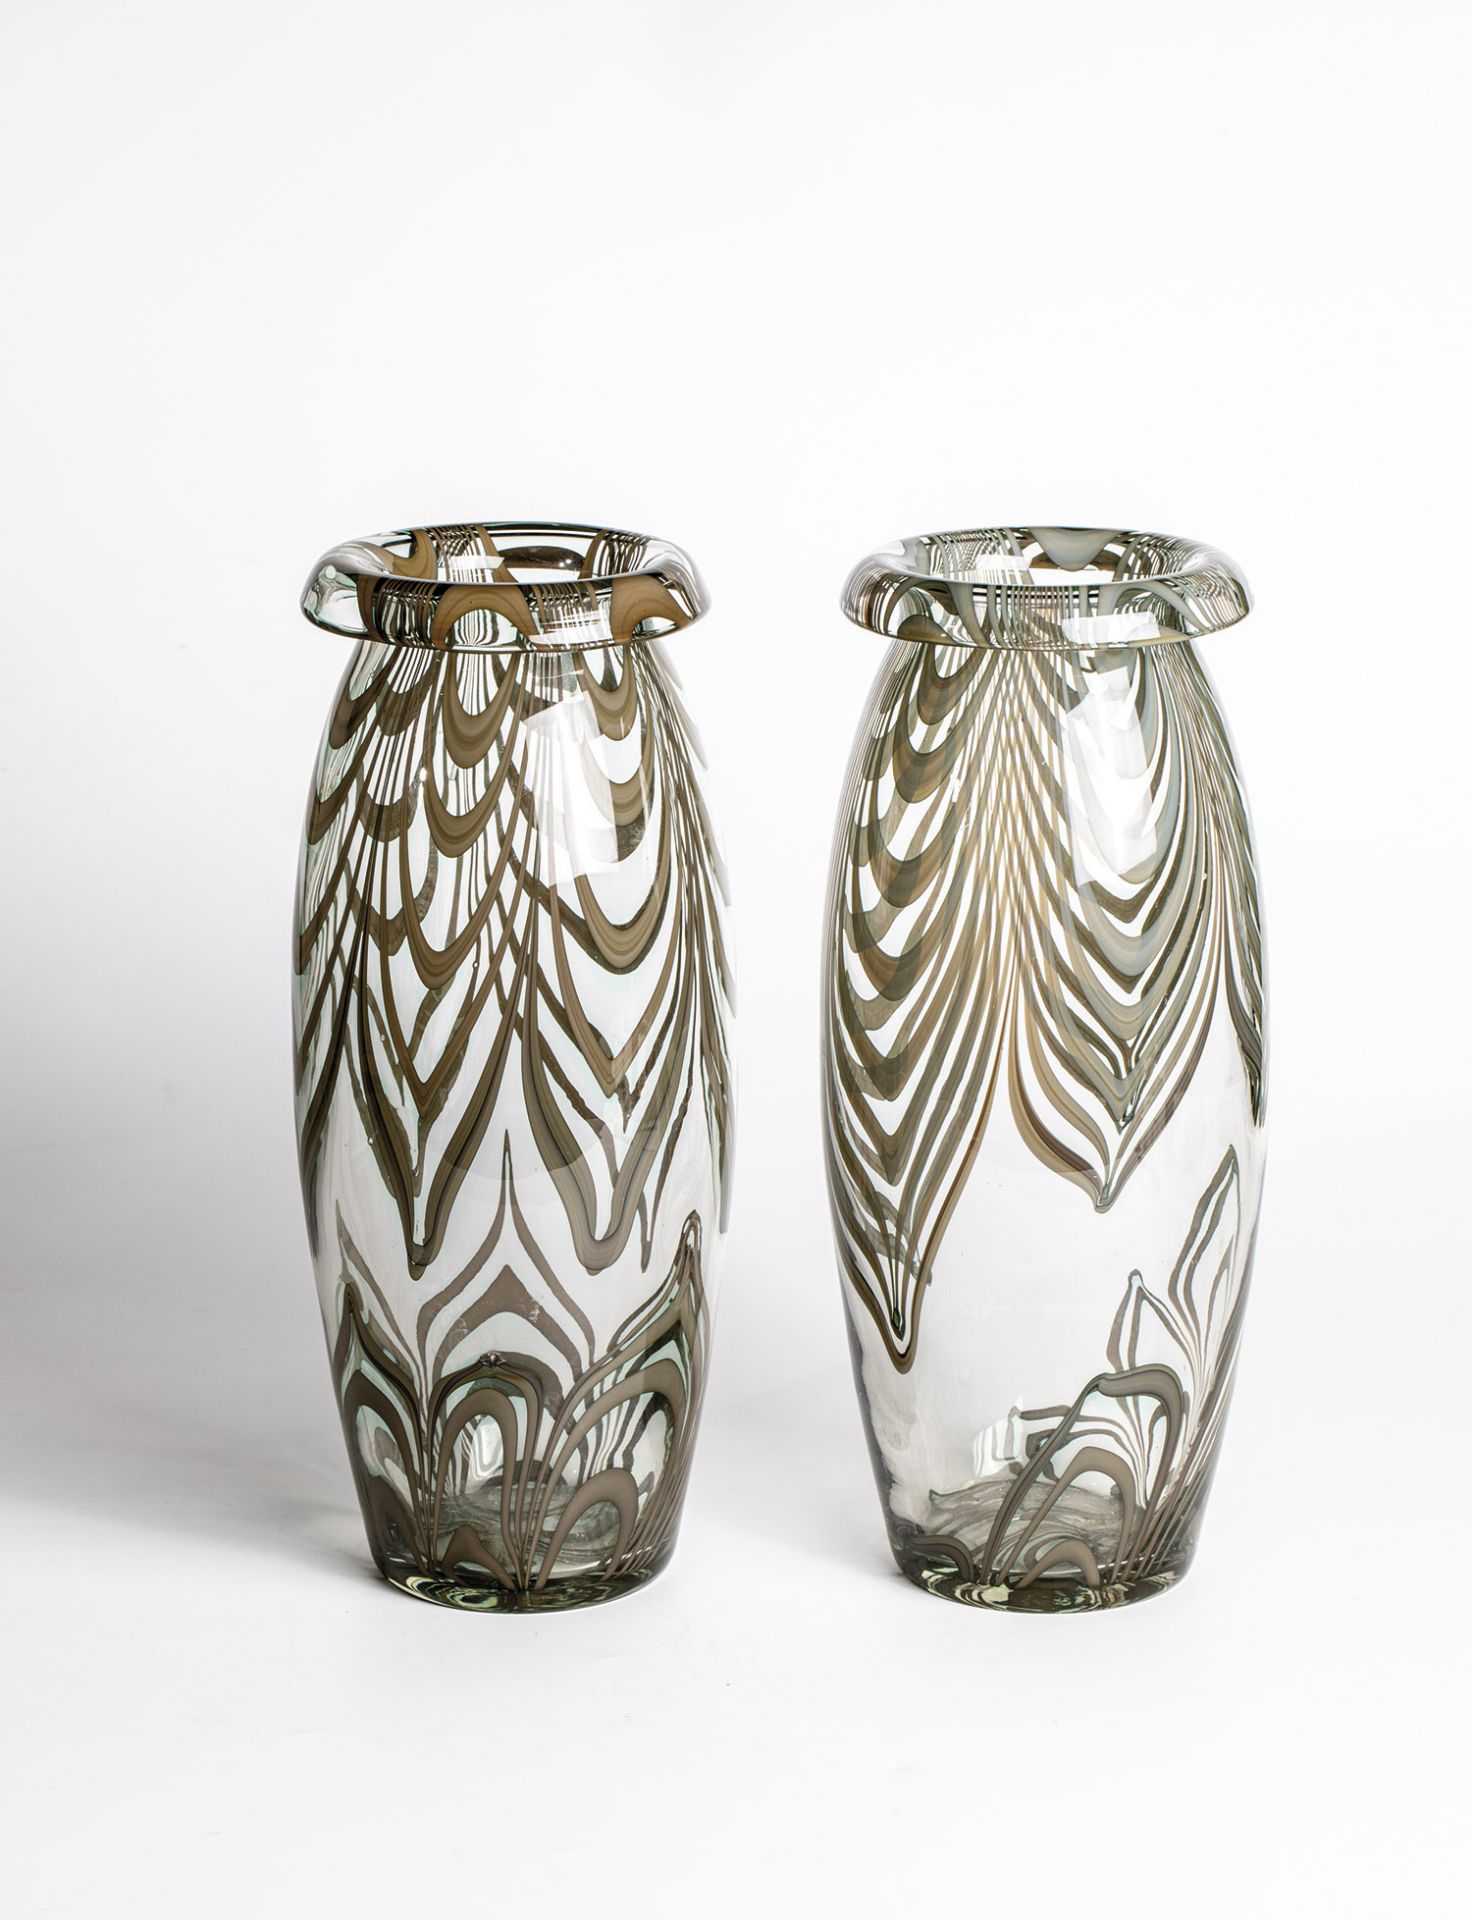 Pair of vases Wolfgang von Wersin (design), Tyrolean glassworks Kramsach (execution), ca. 1926